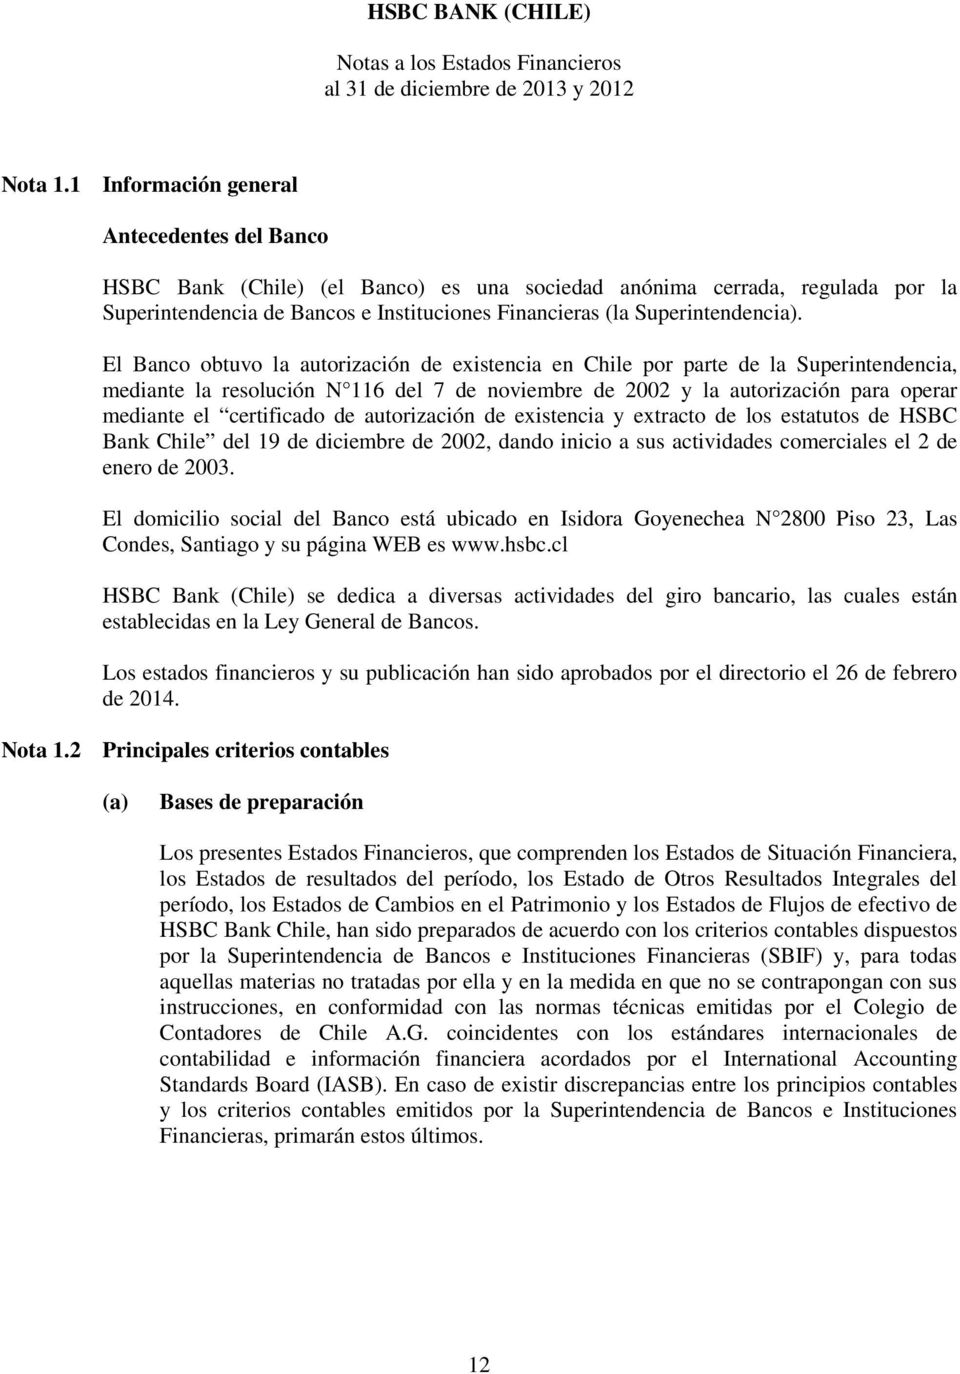 El Banco obtuvo la autorización de existencia en Chile por parte de la Superintendencia, mediante la resolución N 116 del 7 de noviembre de 2002 y la autorización para operar mediante el certificado